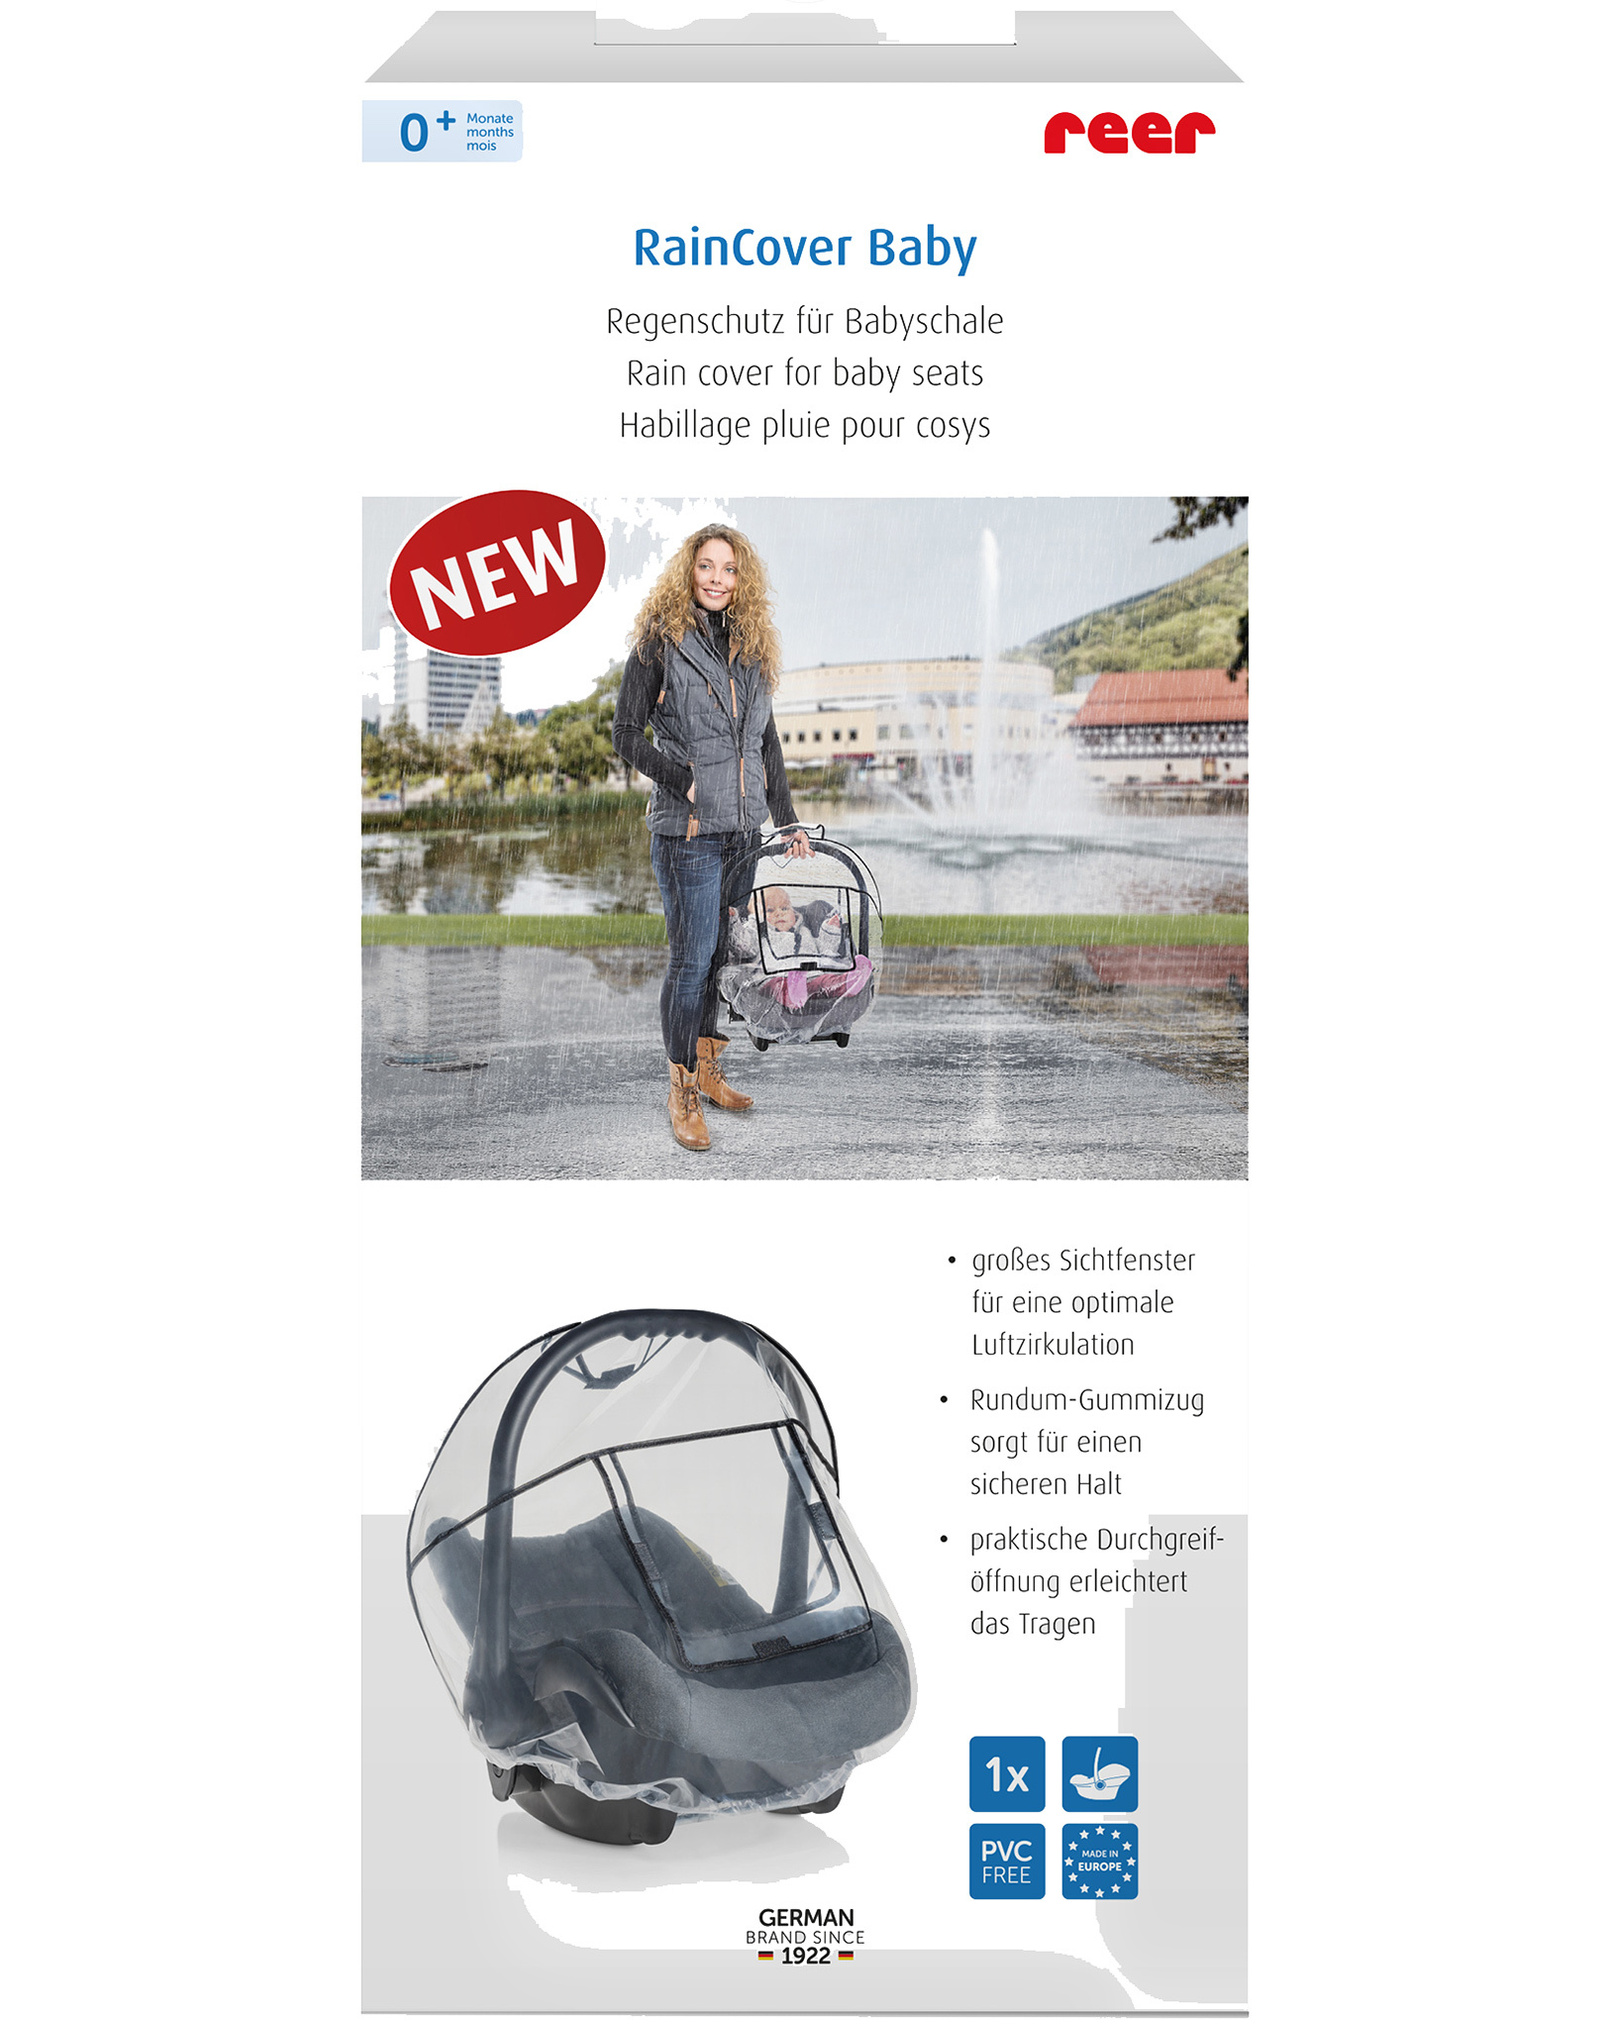 Regenschutz RAIN COVER BABY für Babyschale